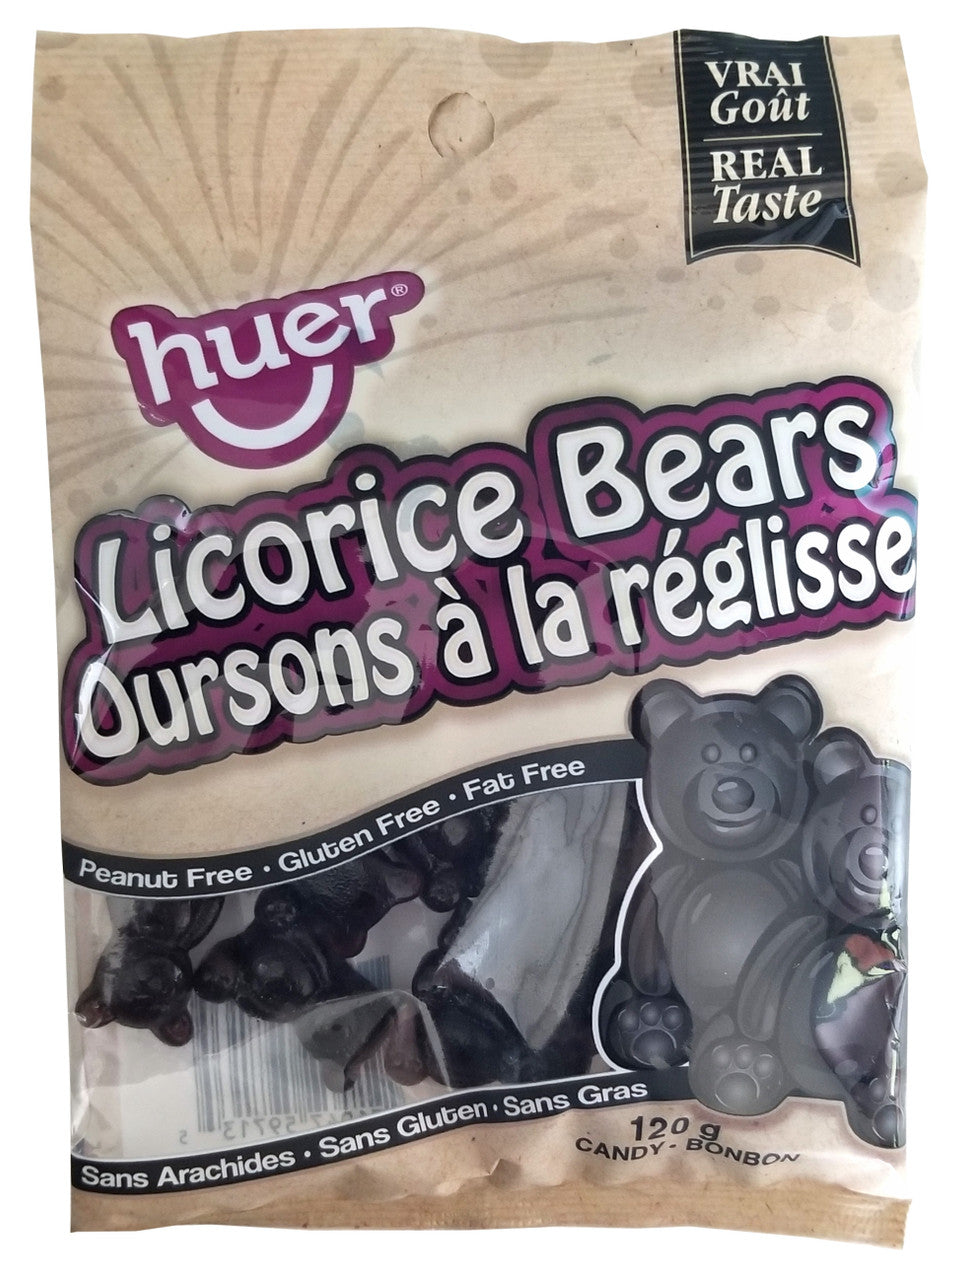 BRACH'S Sugar Free Gummy Bears Candy 3 oz. Bag, Gummy Candy